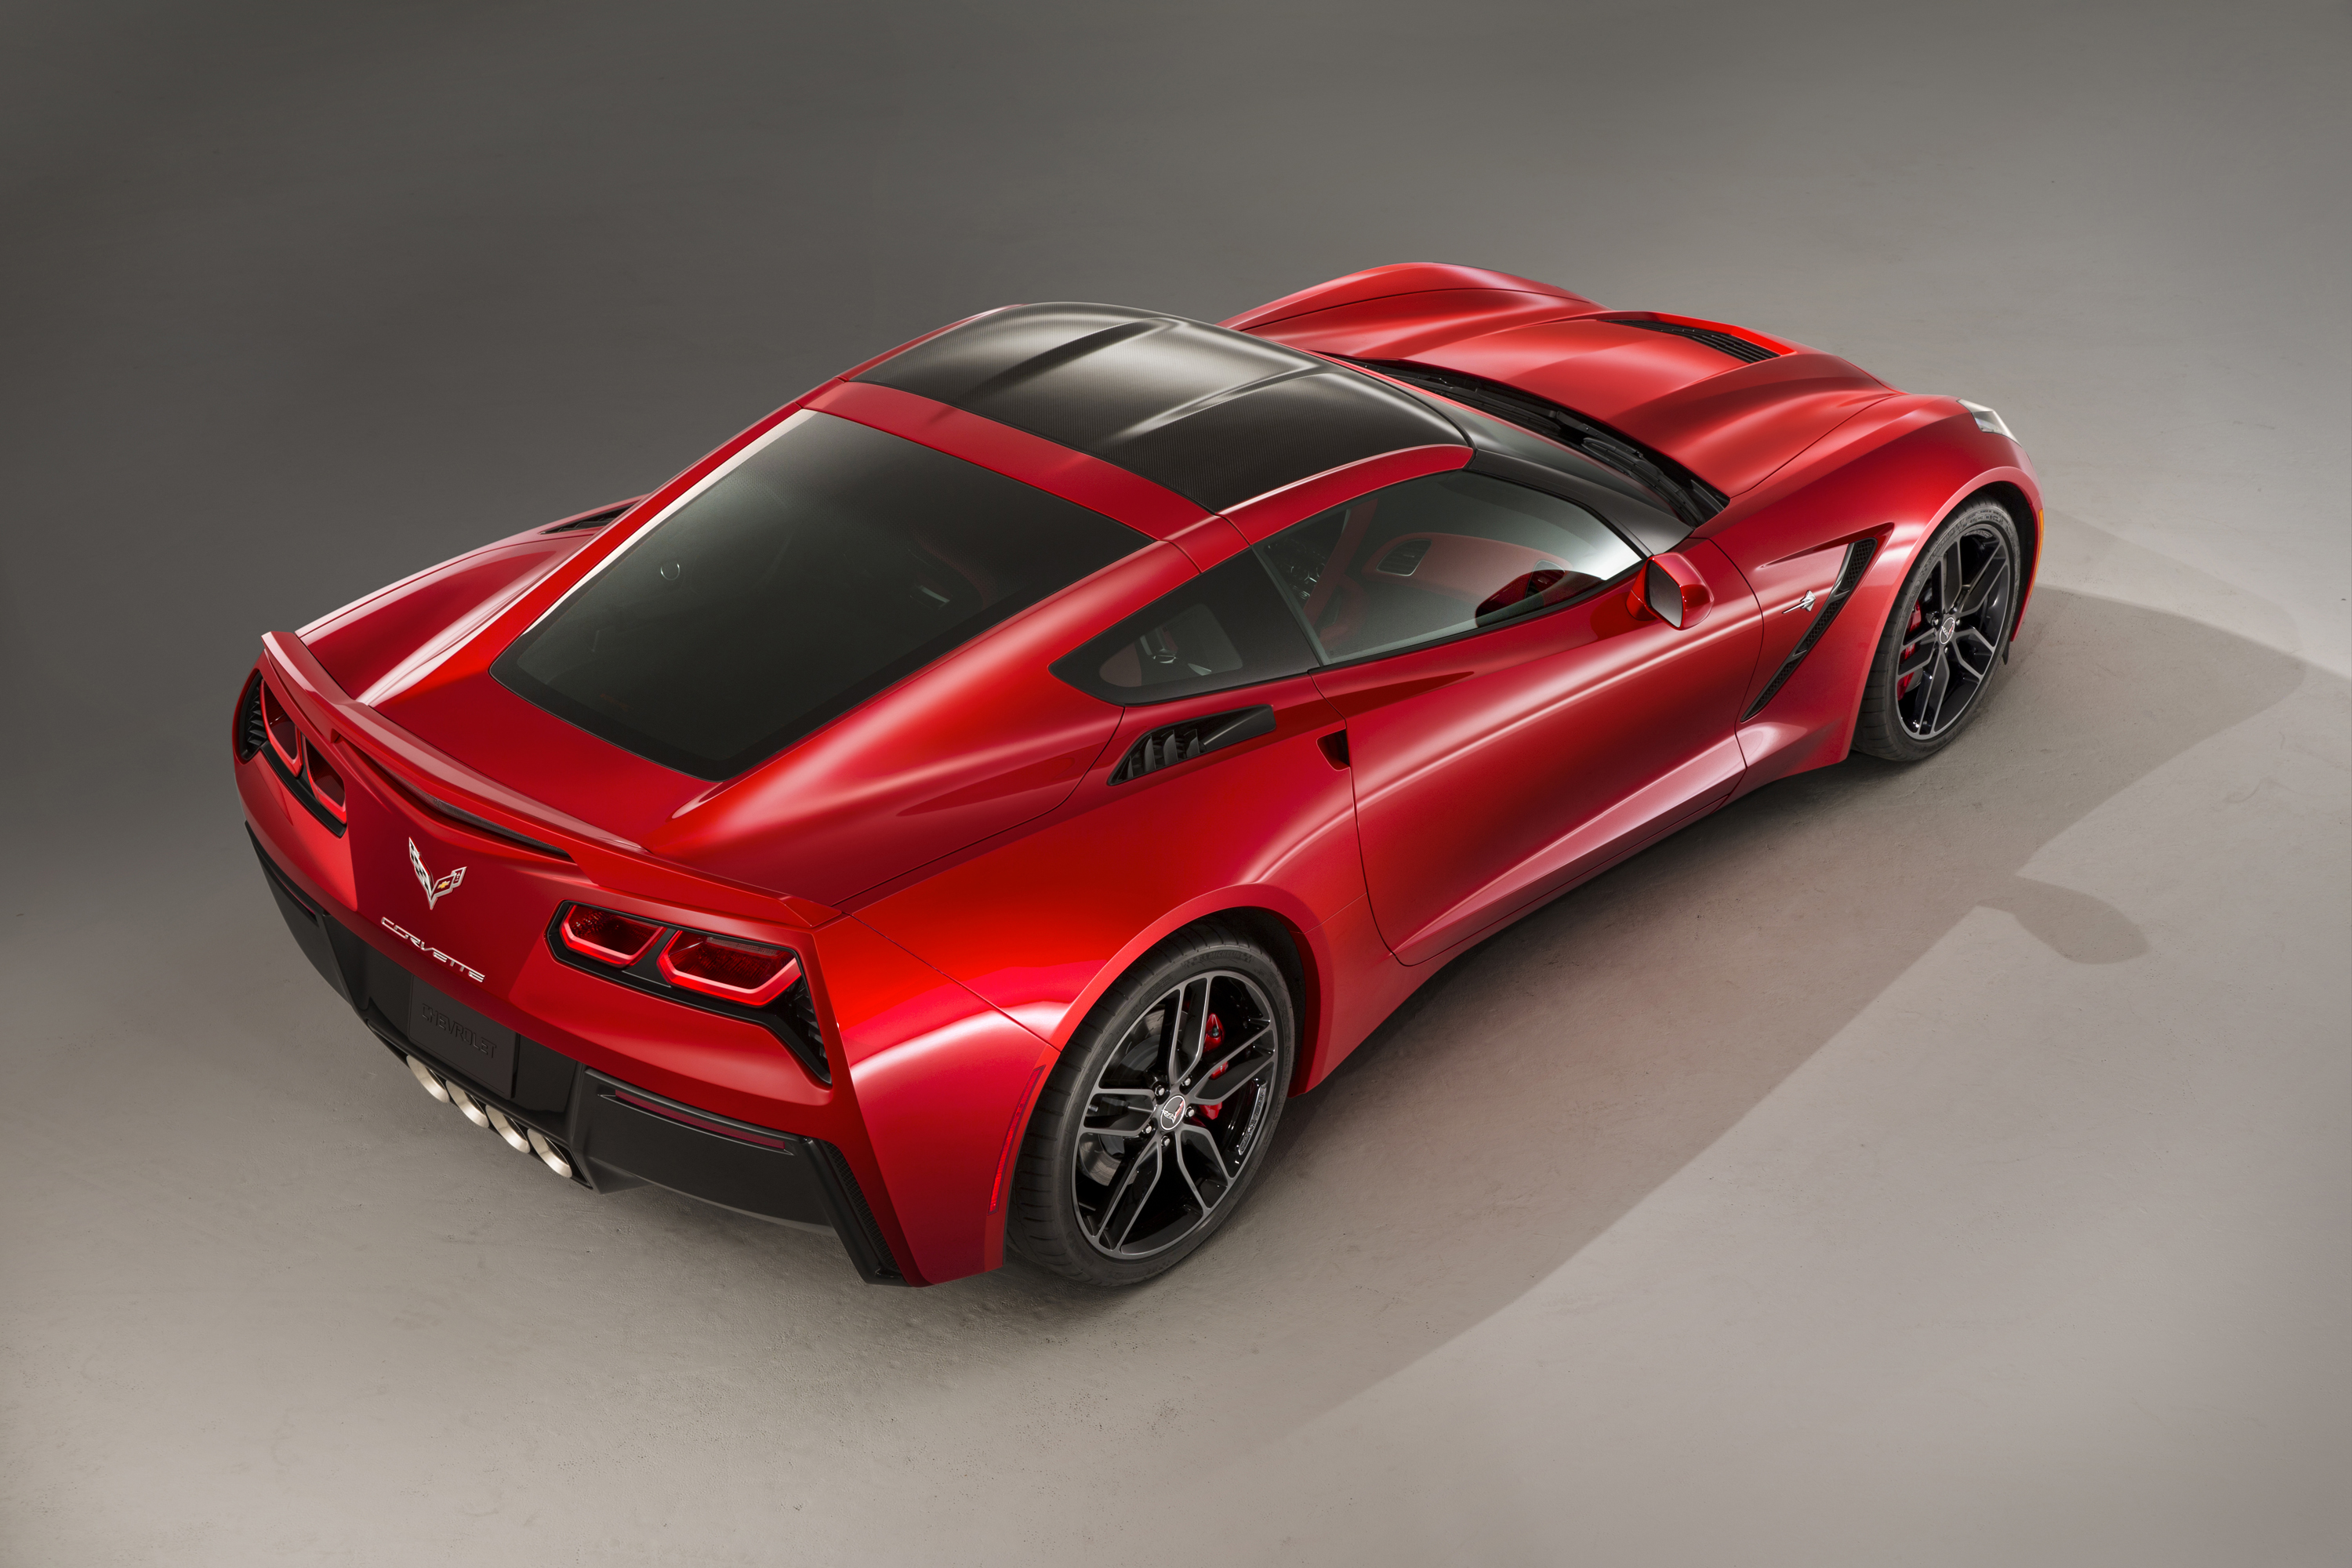 2014 Corvette Stingray Starts at $51,995